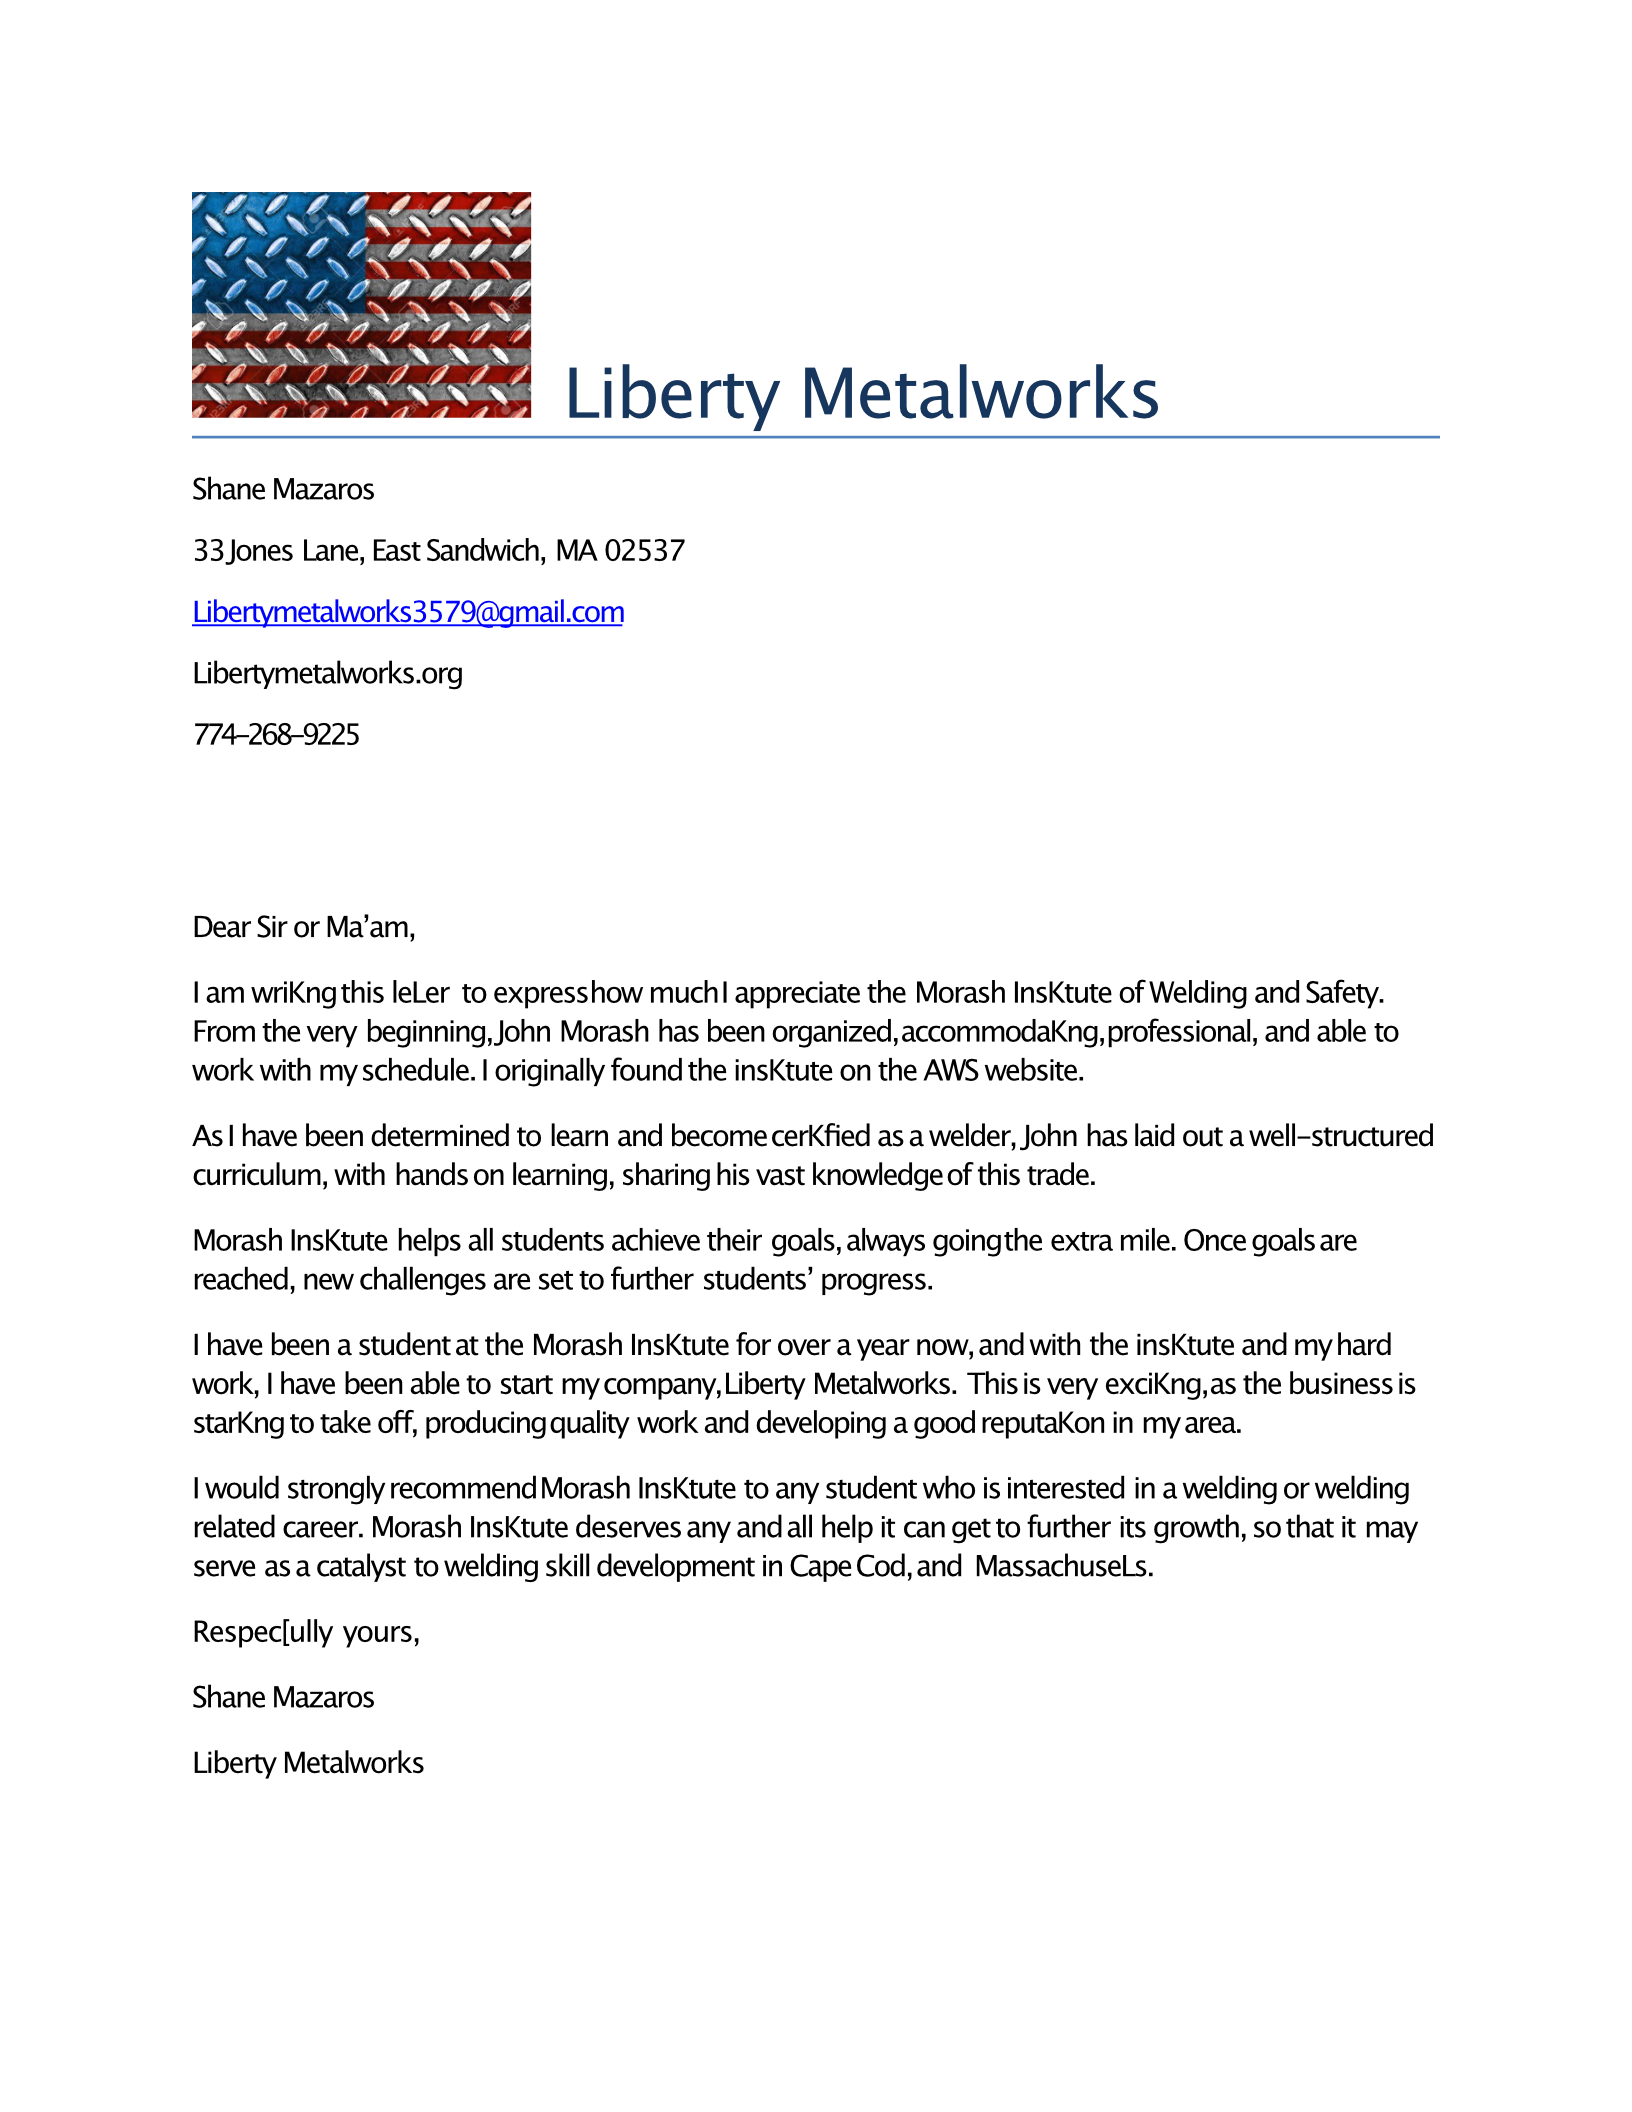 Liberty Metalworks Testimonial